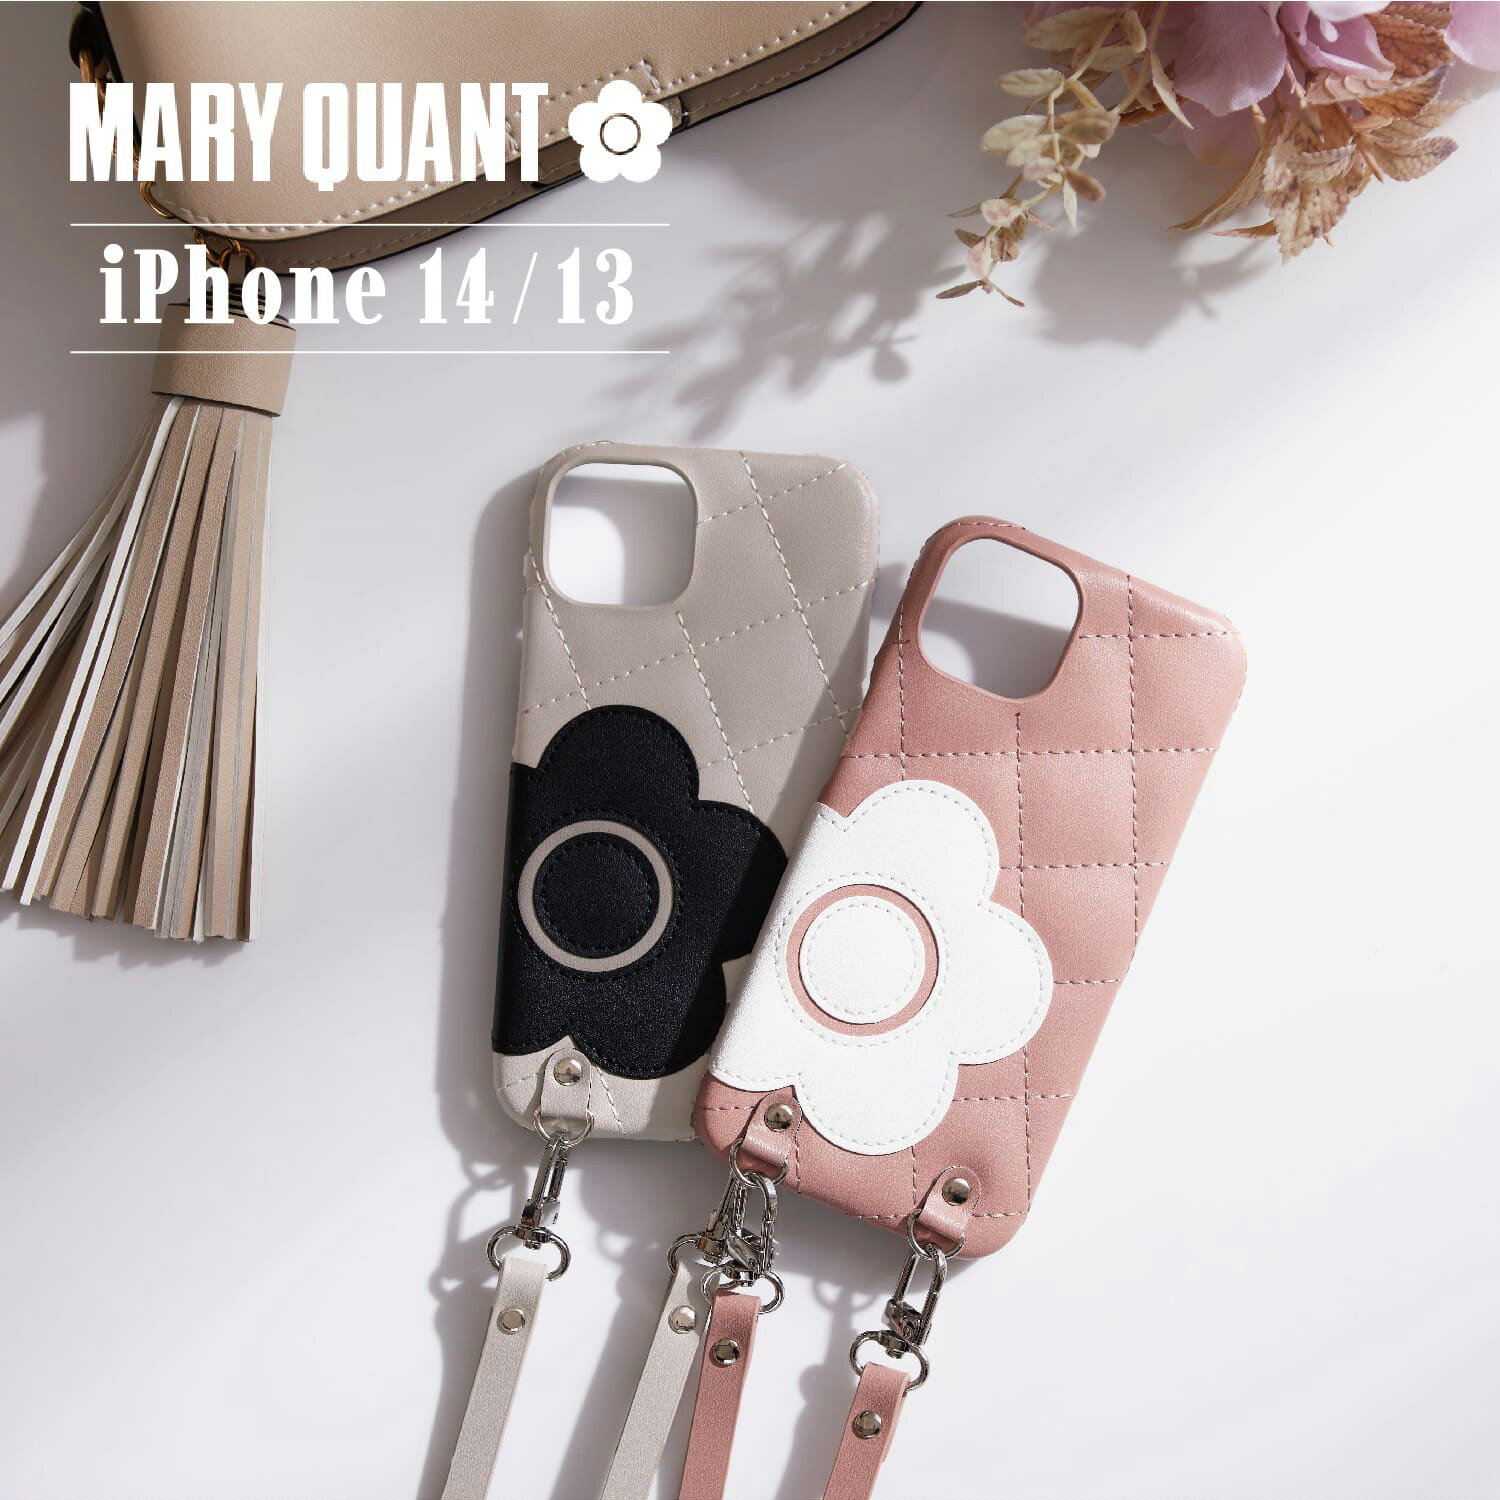 マリークヮント スマホショルダー レディース MARY QUANT PU QUILT LEATHER NEW SLING CASE マリークヮント iPhone 14 13 ケース スマホケース 携帯 レディース ブラック ホワイト グレー ブラウン ピンク 黒 白 母の日